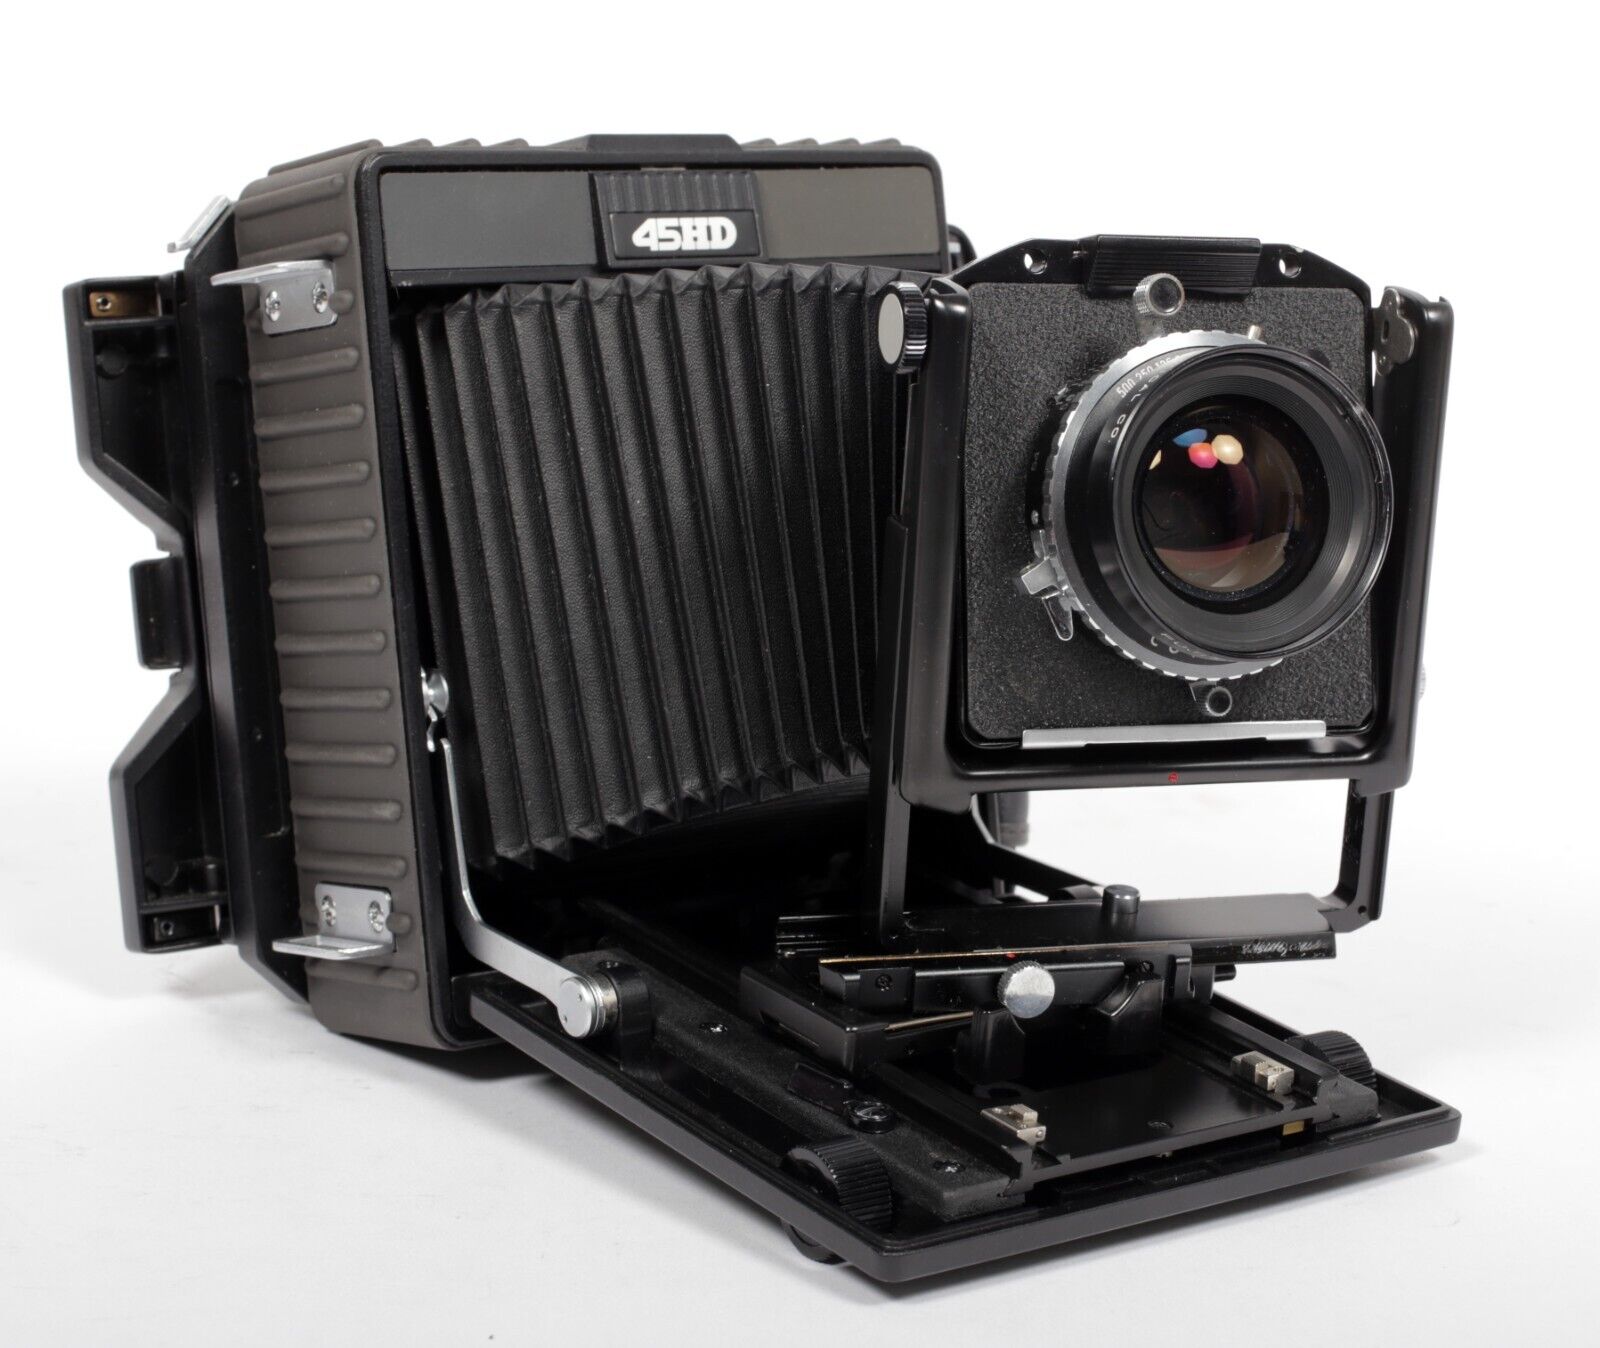 ホースマン45HD - フィルムカメラ